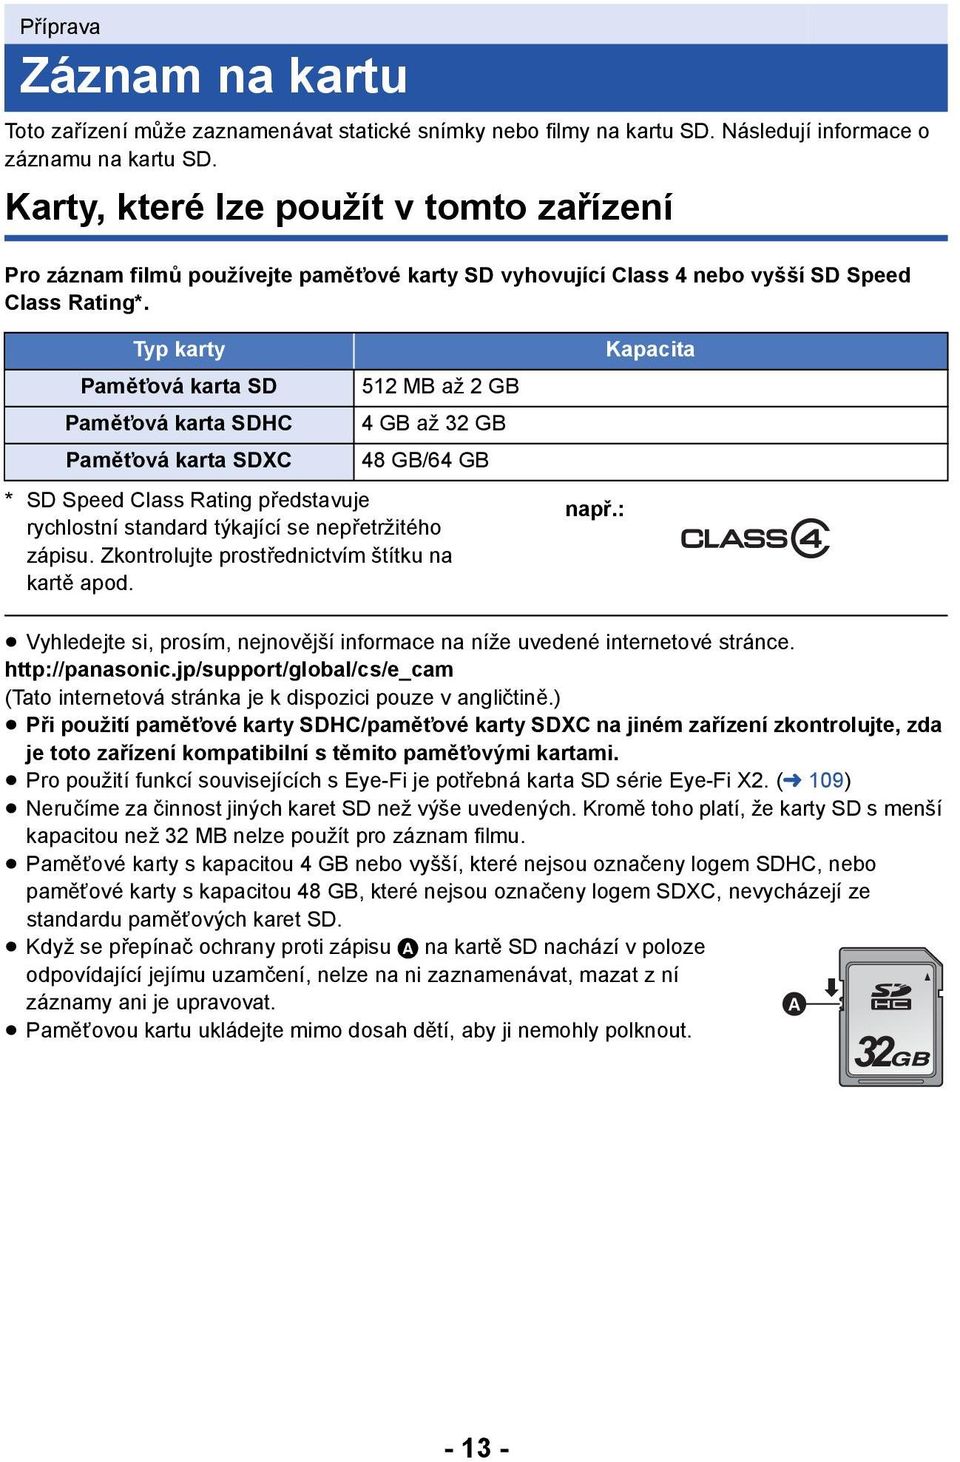 Typ karty Paměťová karta SD Paměťová karta SDHC Paměťová karta SDXC 512MB až 2GB 4 GB až 32 GB 48 GB/64 GB * SD Speed Class Rating představuje rychlostní standard týkající se nepřetržitého zápisu.